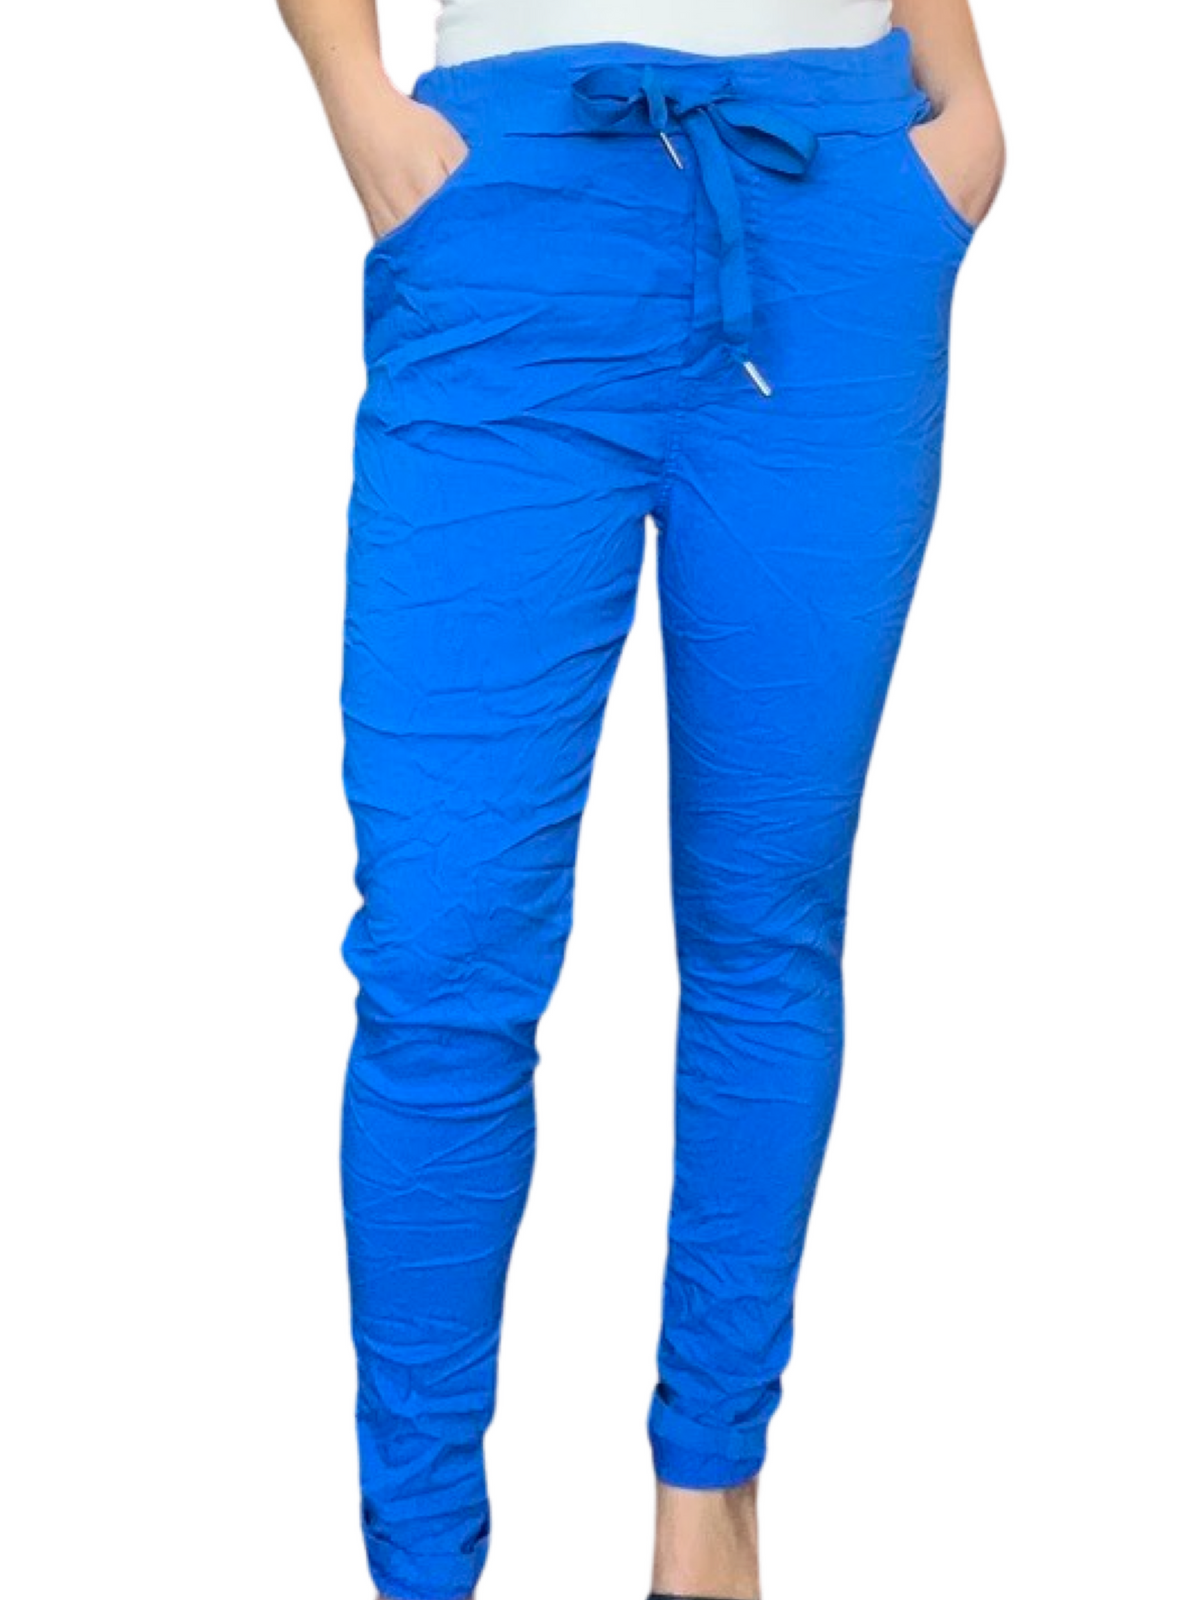 Pantalon bleu royal pour femme à taille élastique avec cordon avec camisole.